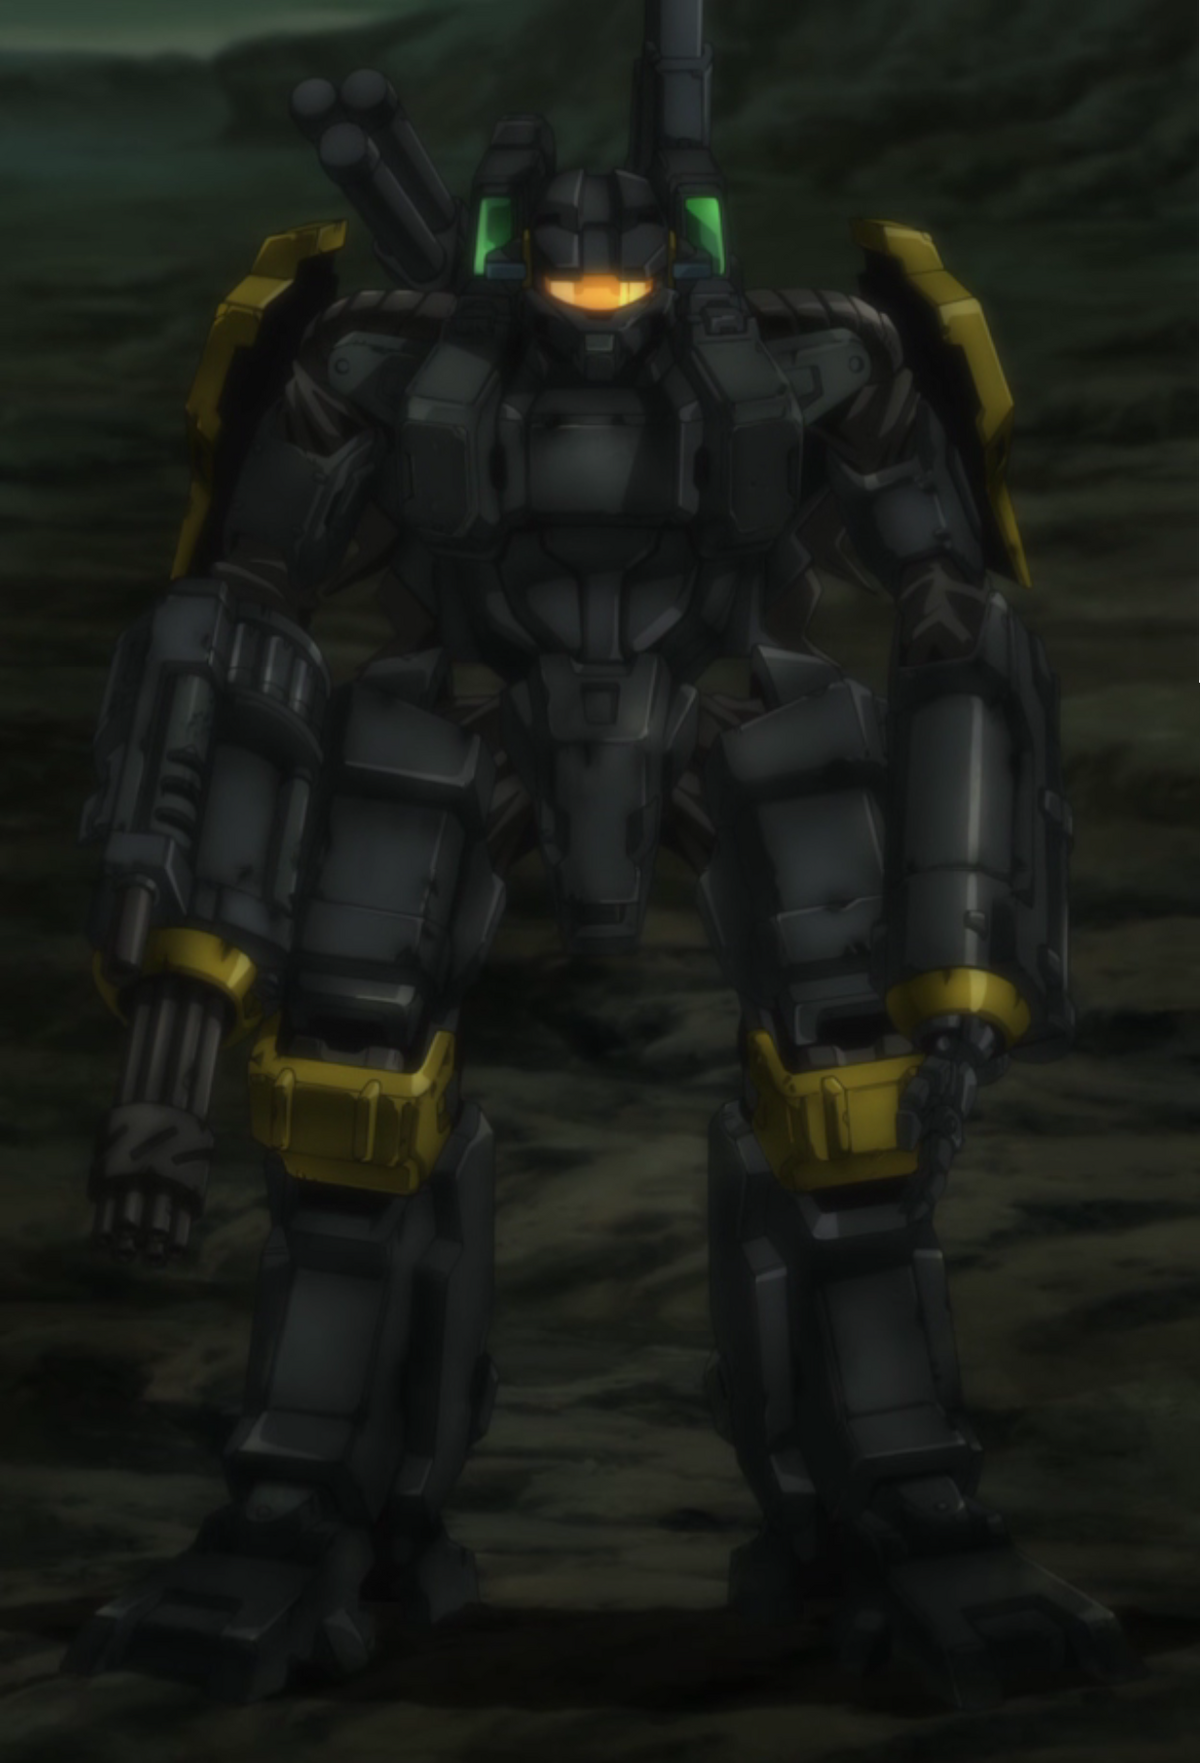 prototype armor mode